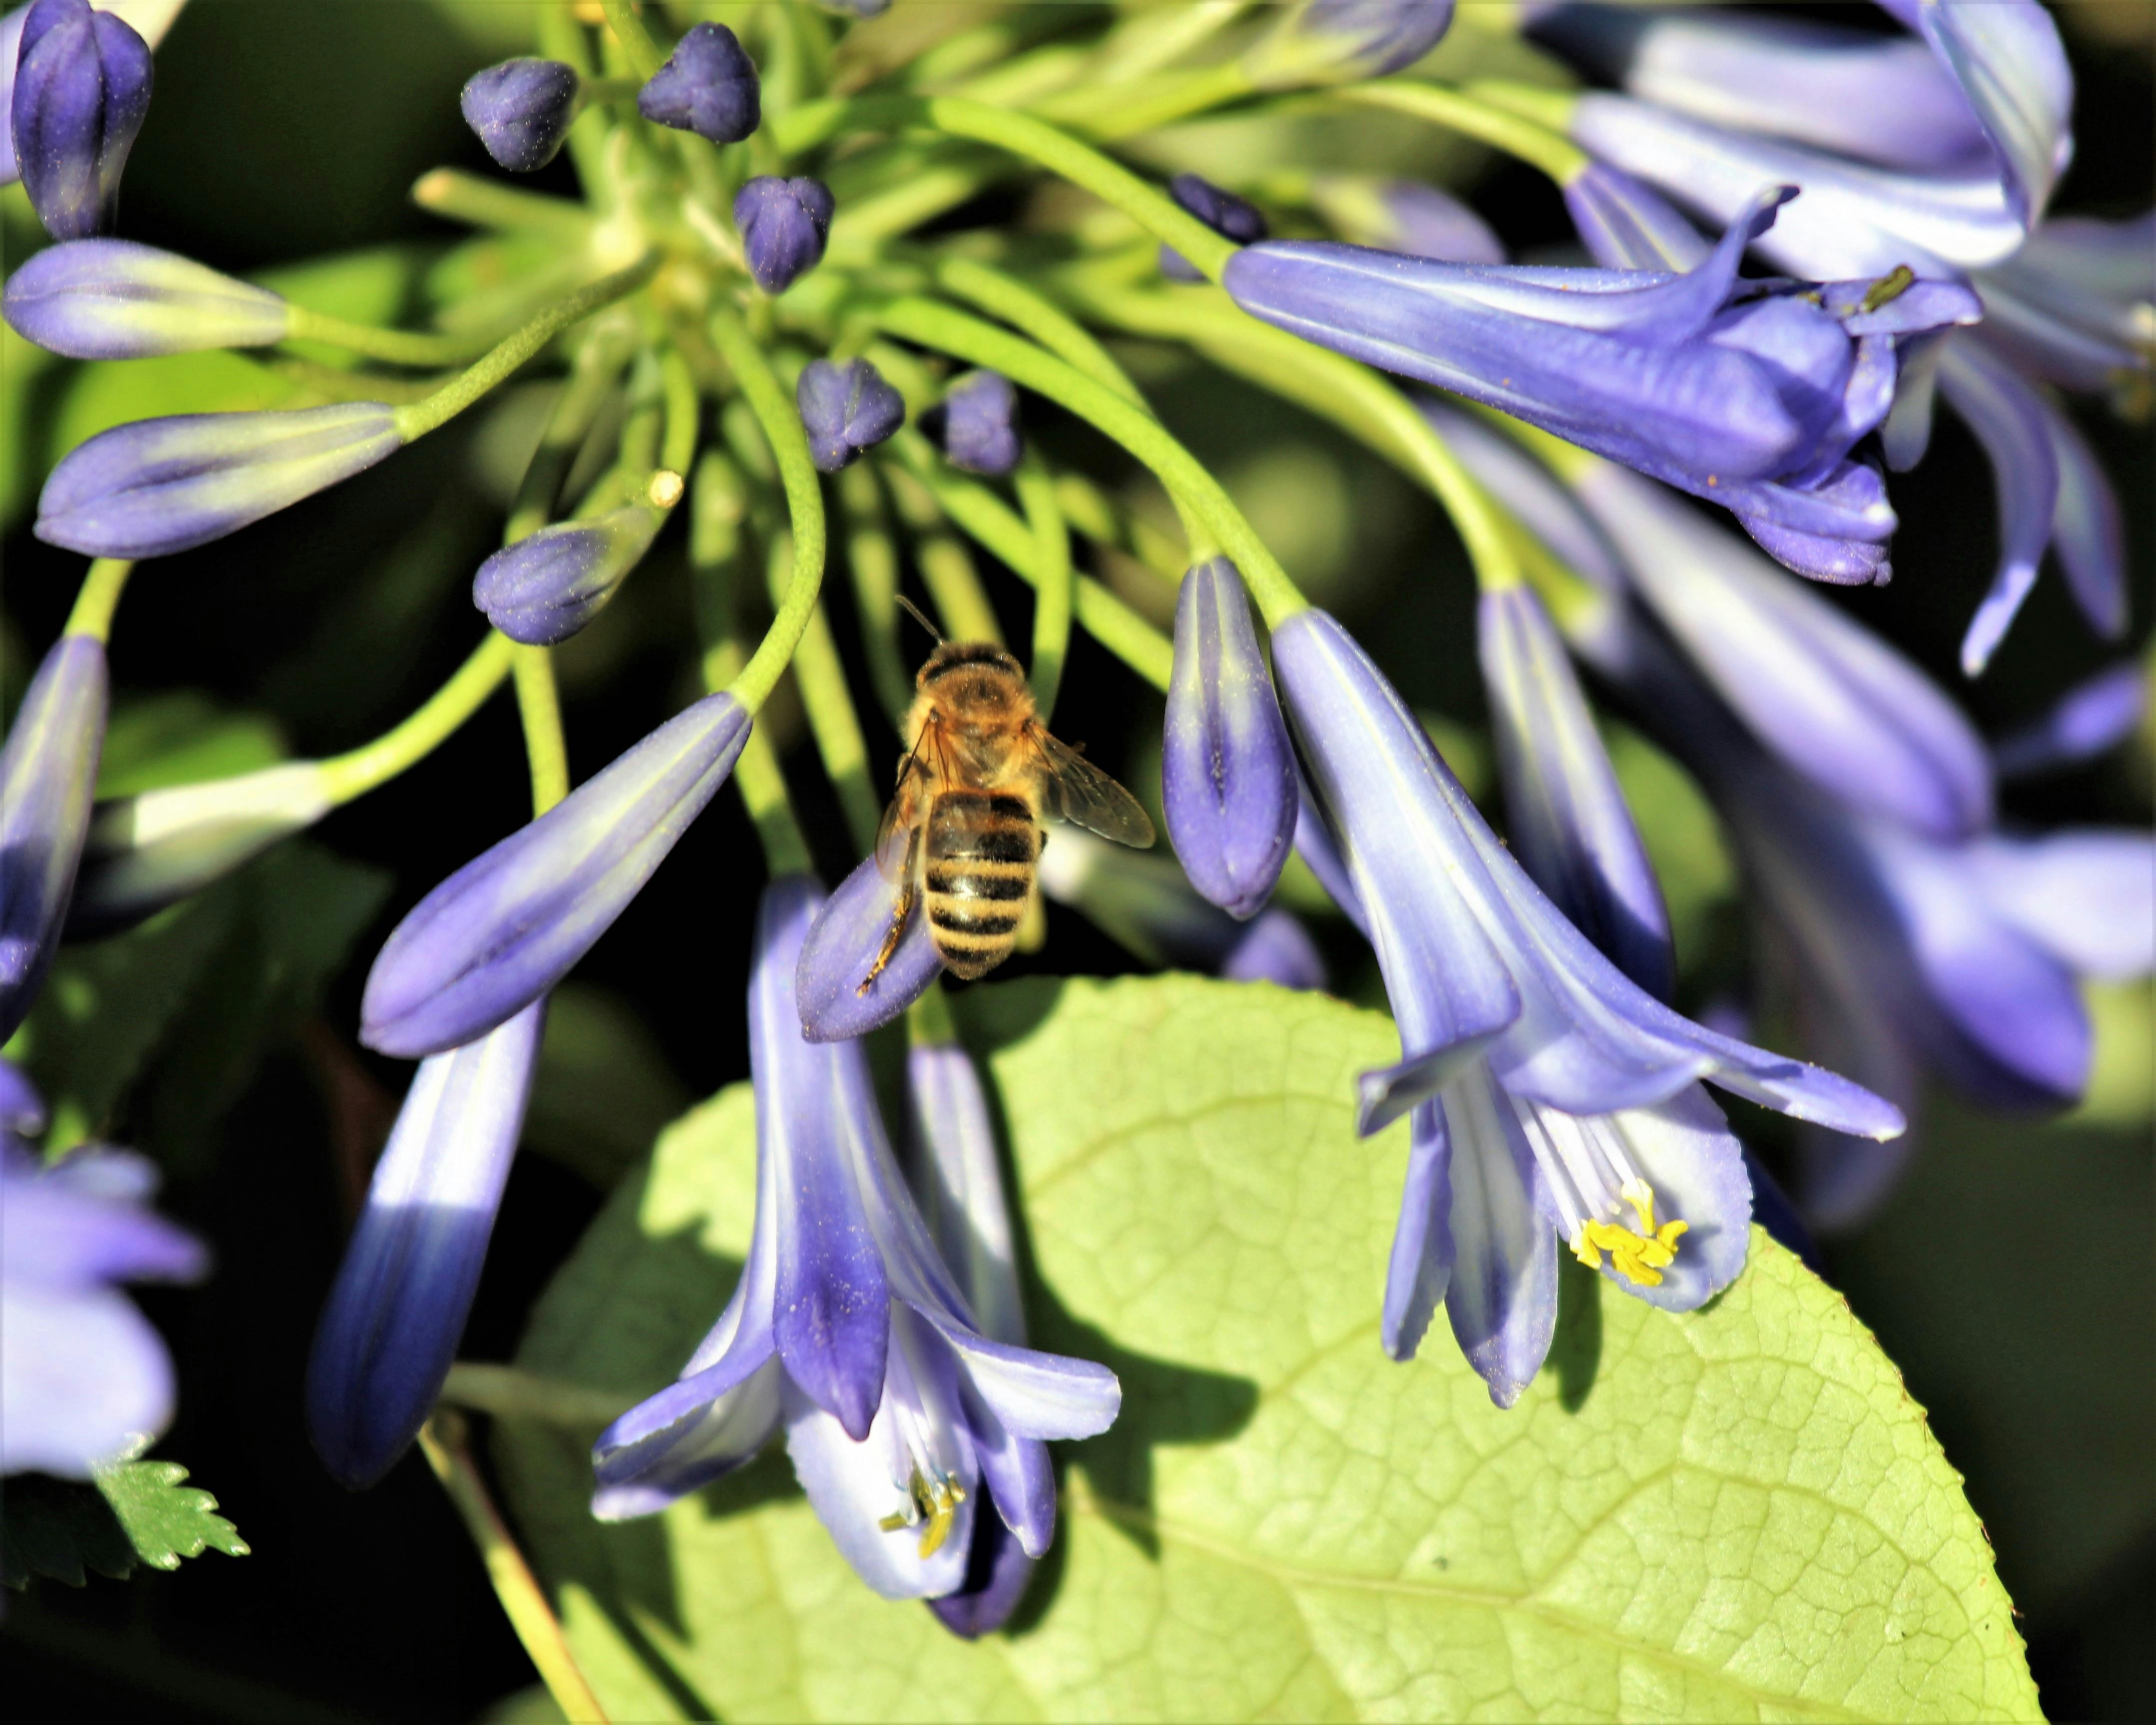 在荒野中开花的蜜蜂兰花 库存照片. 图片 包括有 花卉, 兰花, 栖所, 模仿, 欺骗, 习性, 服务 - 227129274